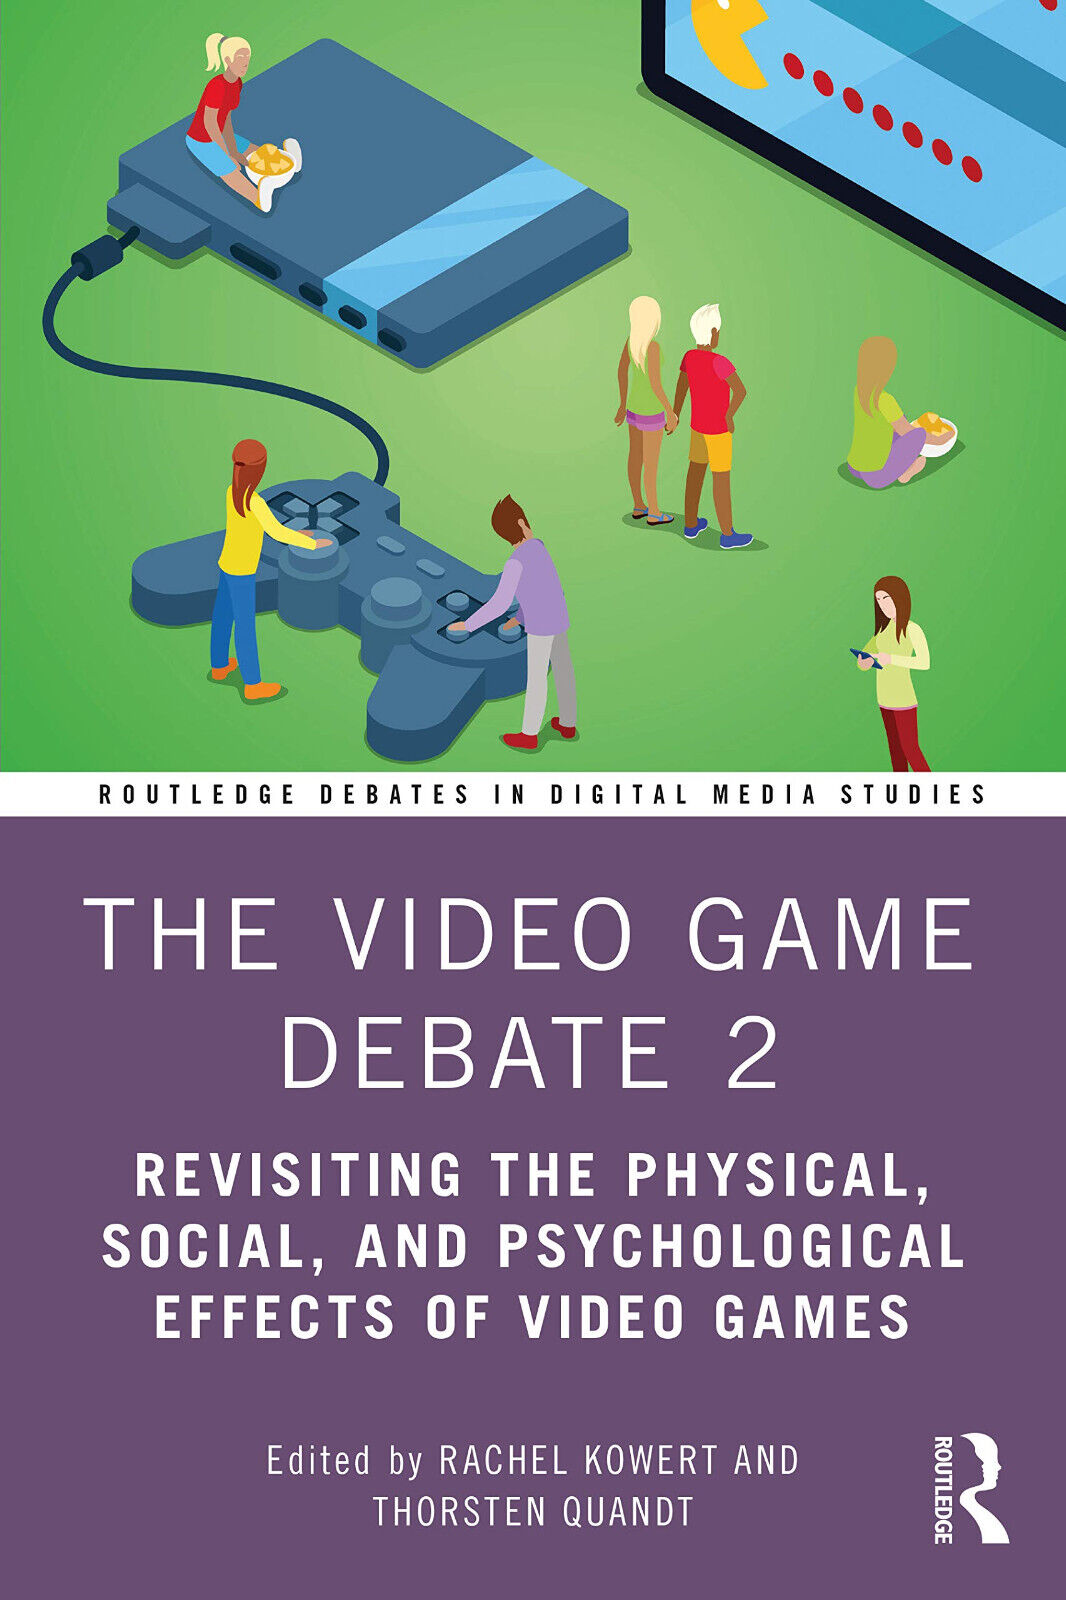 The Video Game Debate 2 - Rachel Kowert, Thorsten Quandt - Routledge, 2020